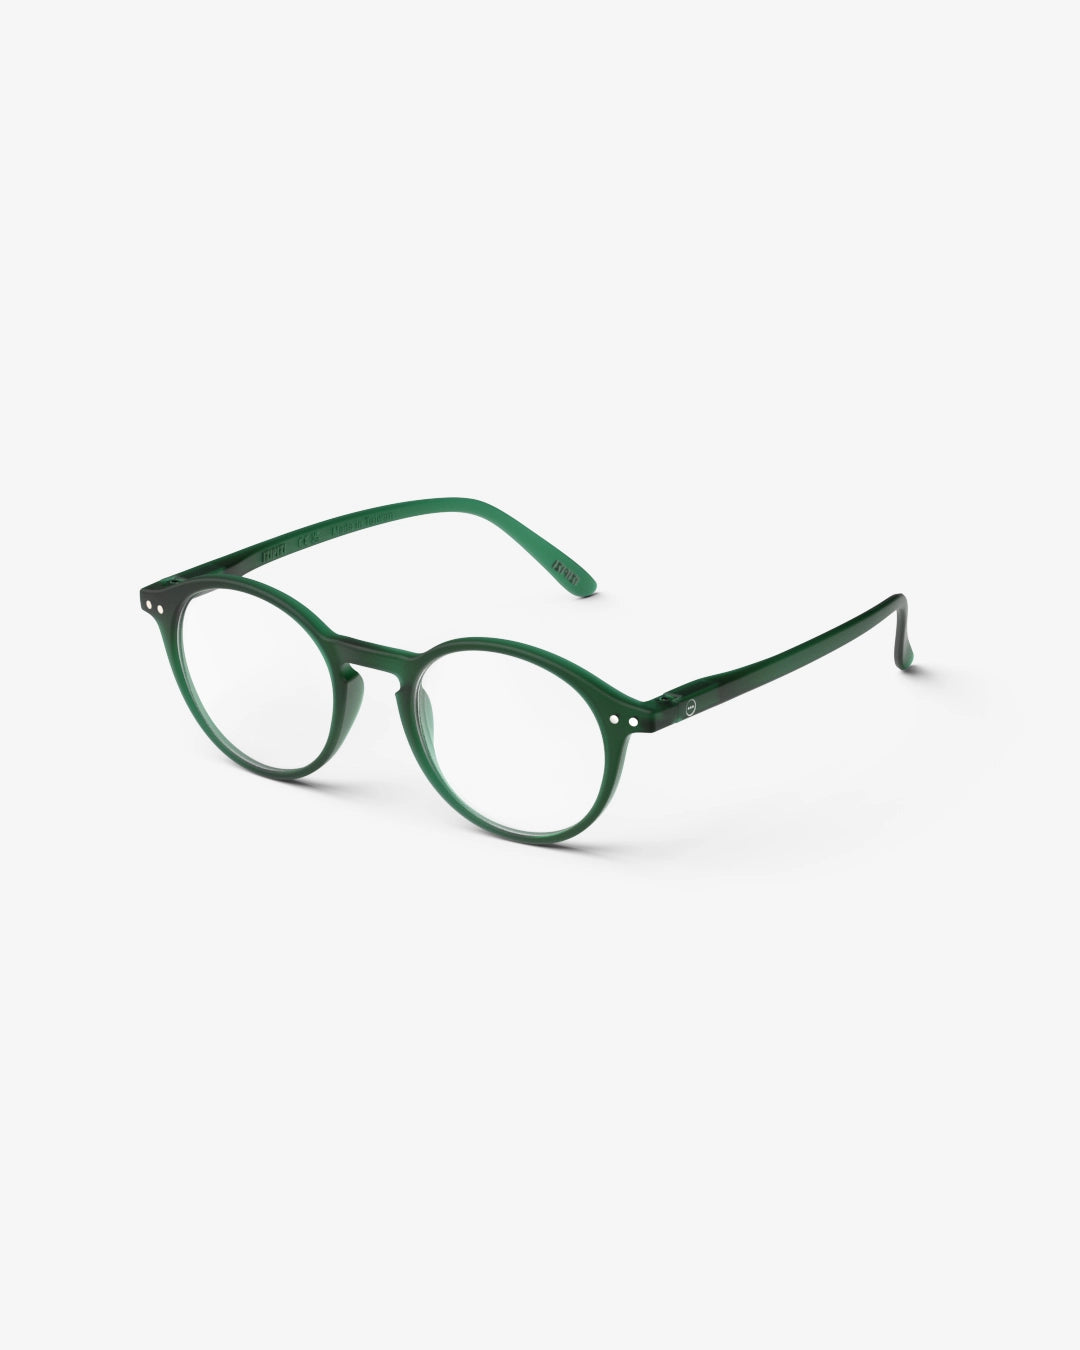 #D Reading Glasses - green